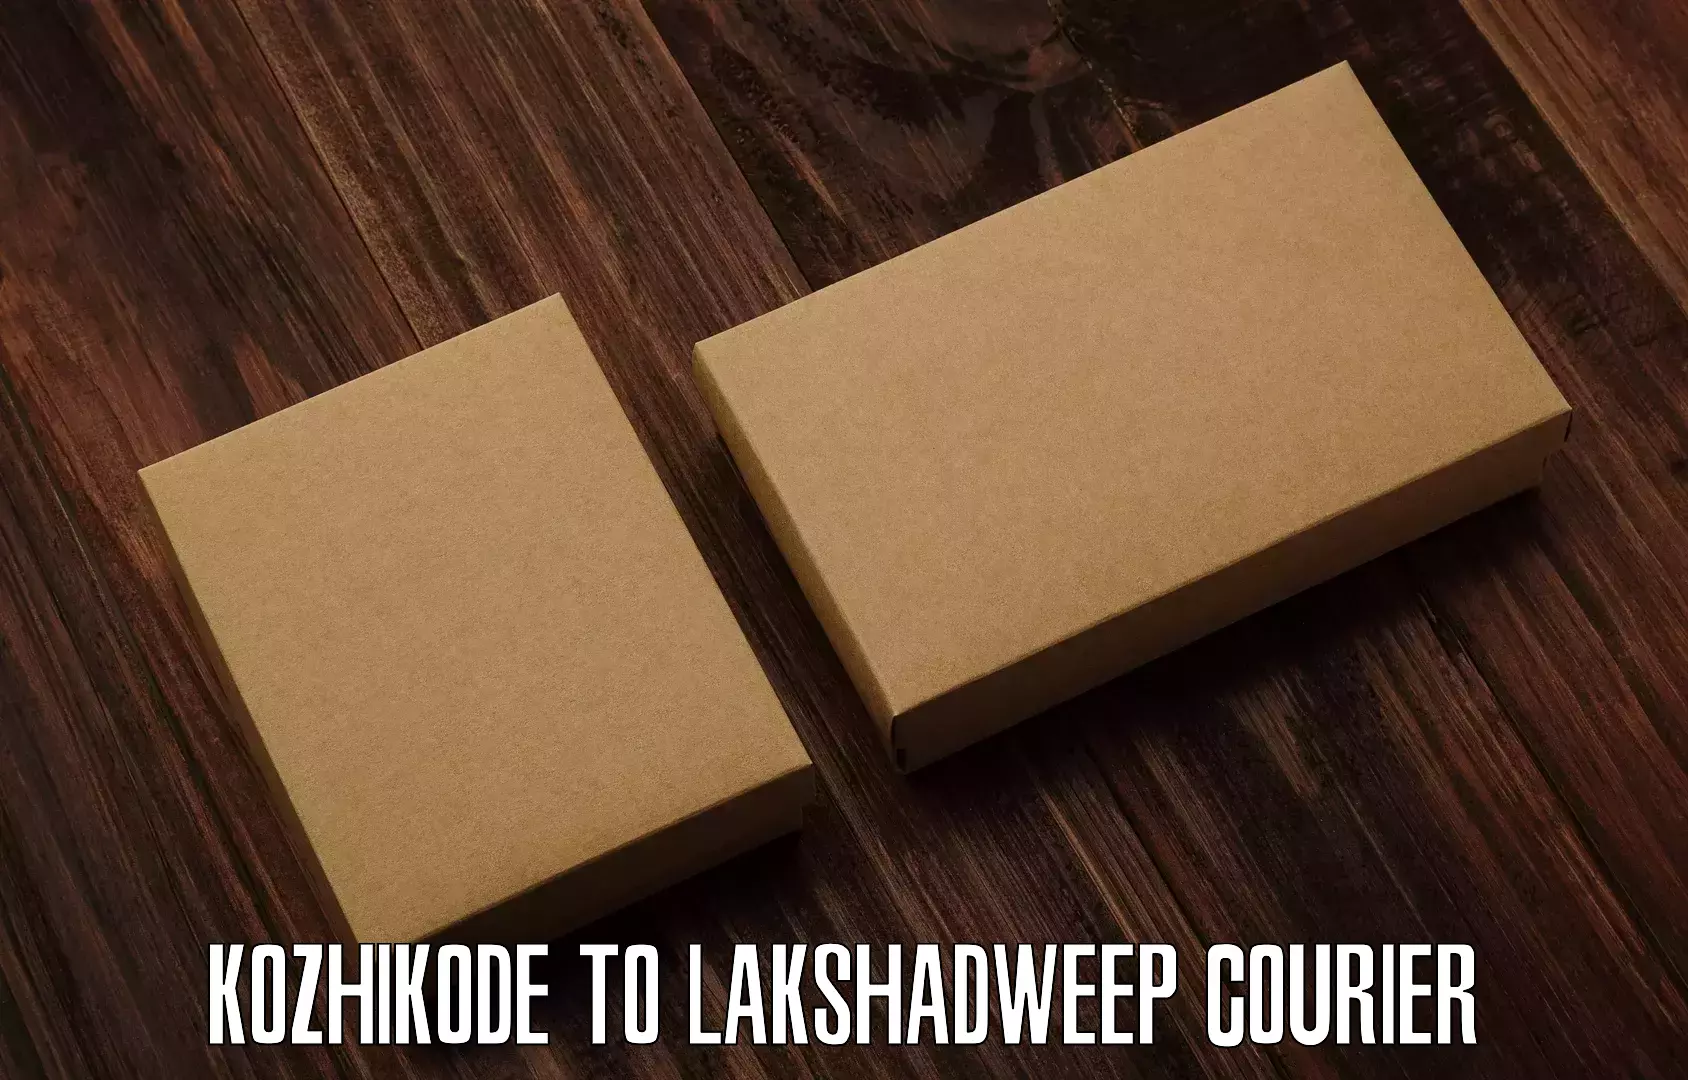 Express package handling Kozhikode to Lakshadweep